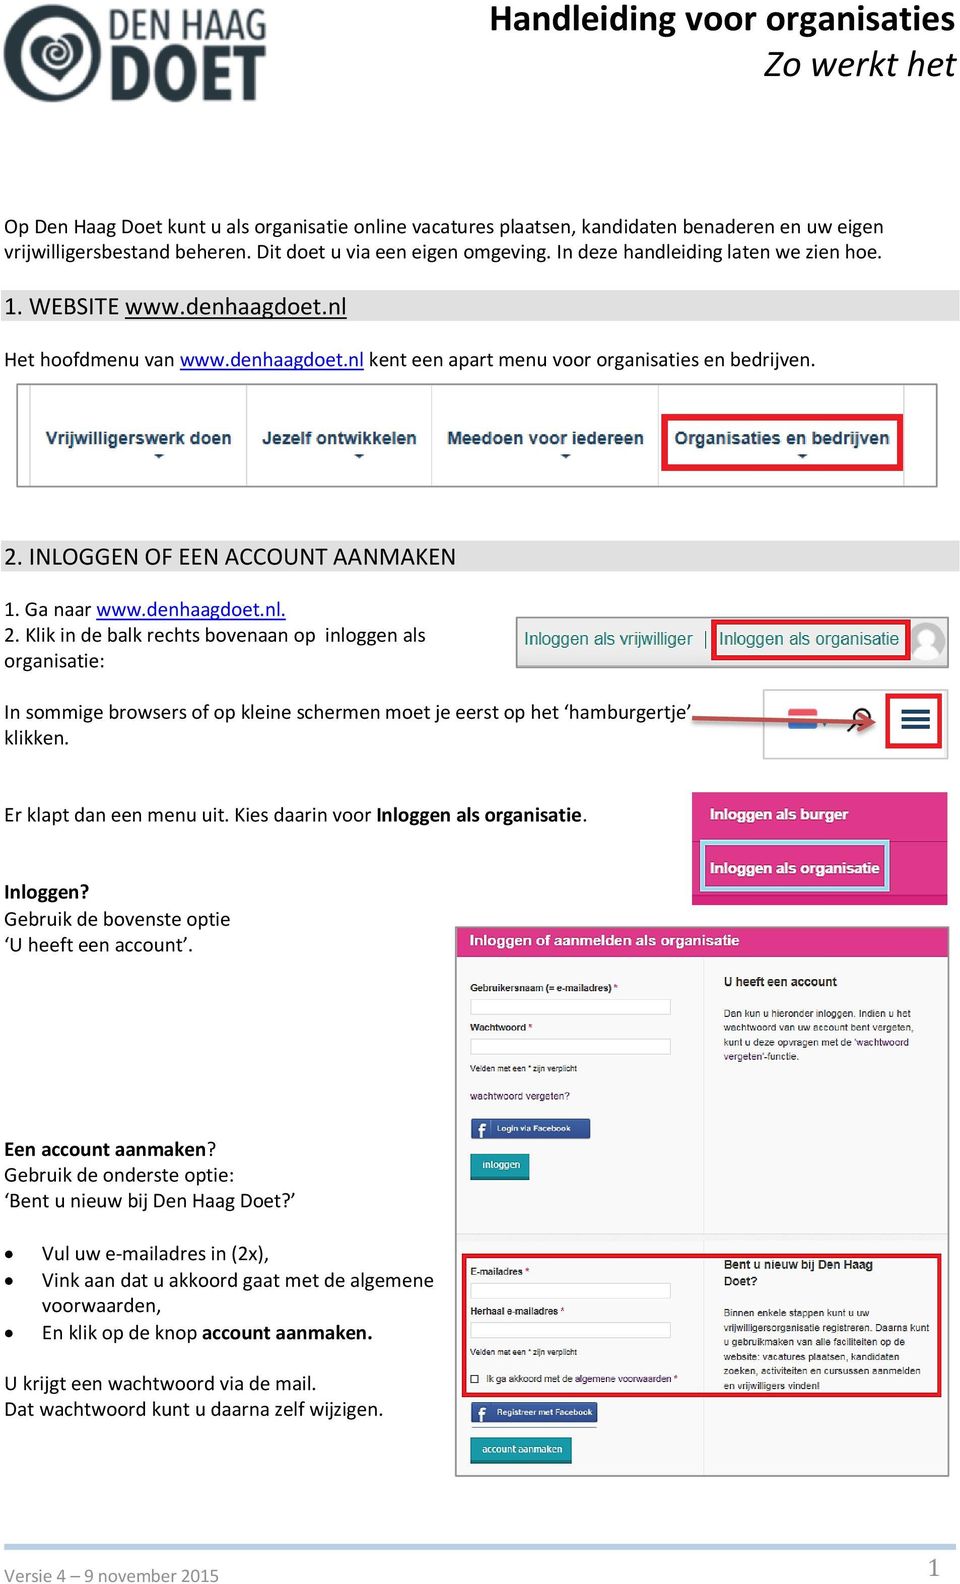 Ga naar www.denhaagdoet.nl. 2. Klik in de balk rechts bovenaan op inloggen als organisatie: In sommige browsers of op kleine schermen moet je eerst op het hamburgertje klikken.